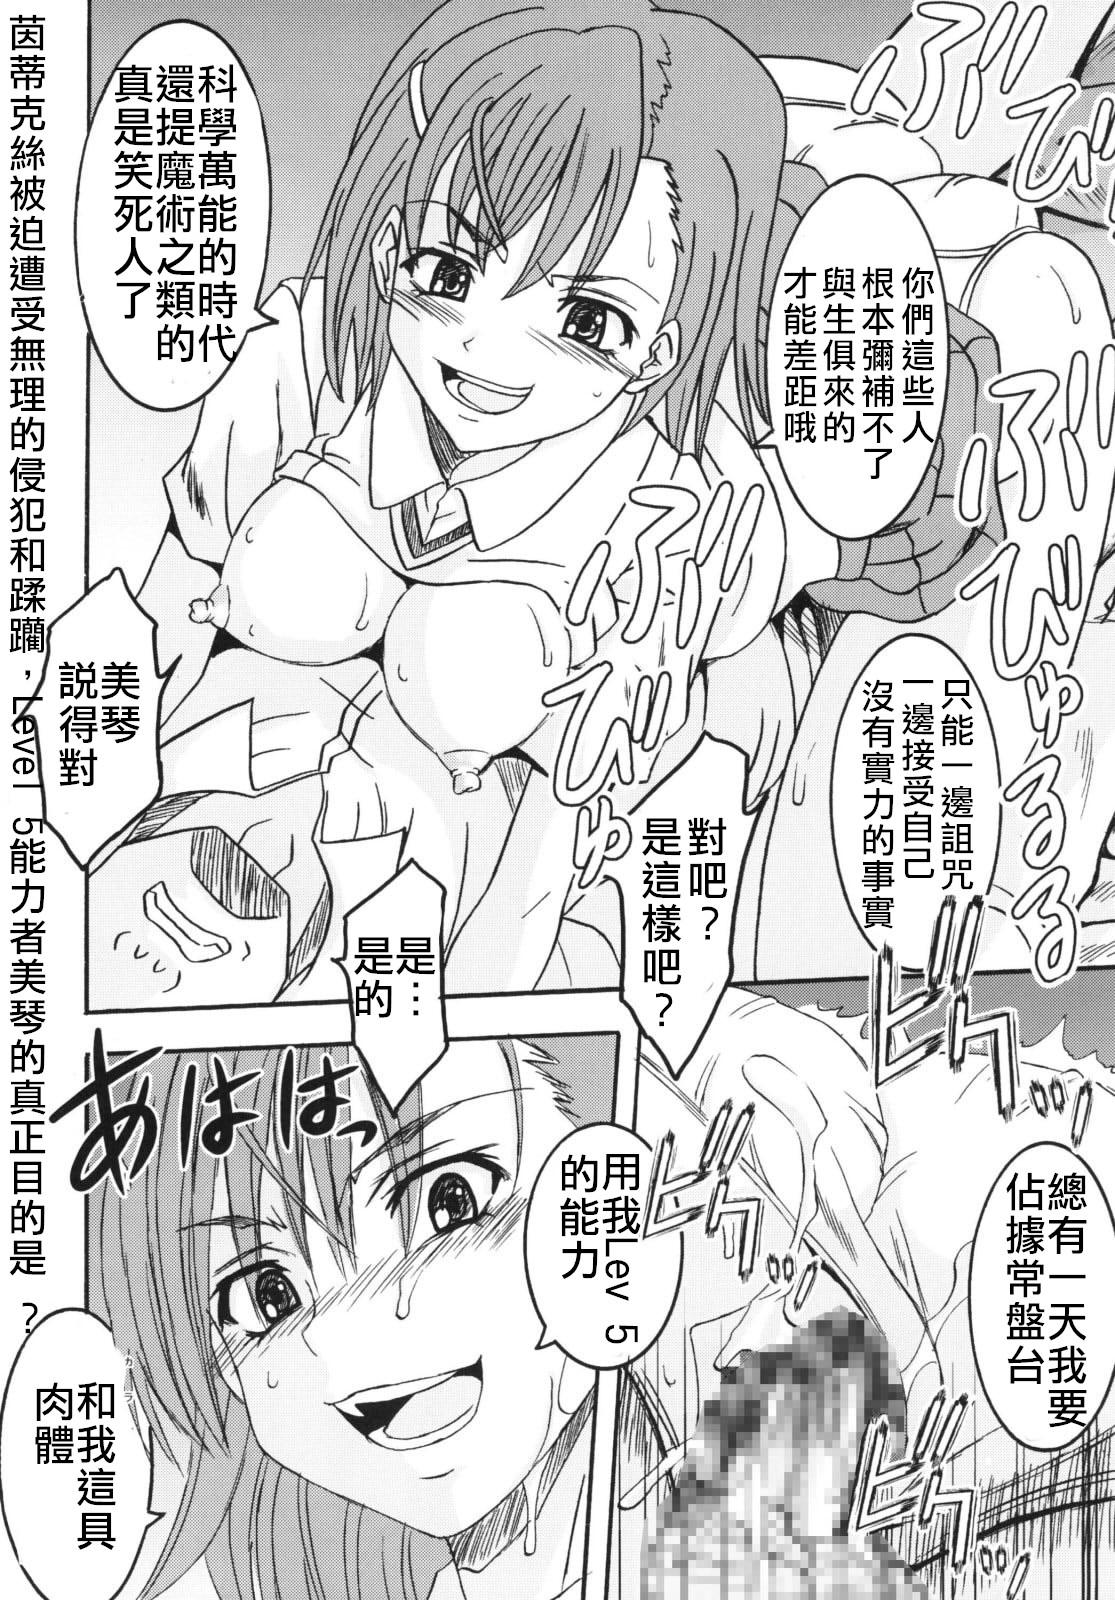 Toaru Otaku no Index #2 | 某魔术的淫蒂克丝，某不良少年的茵蒂克丝#2 22